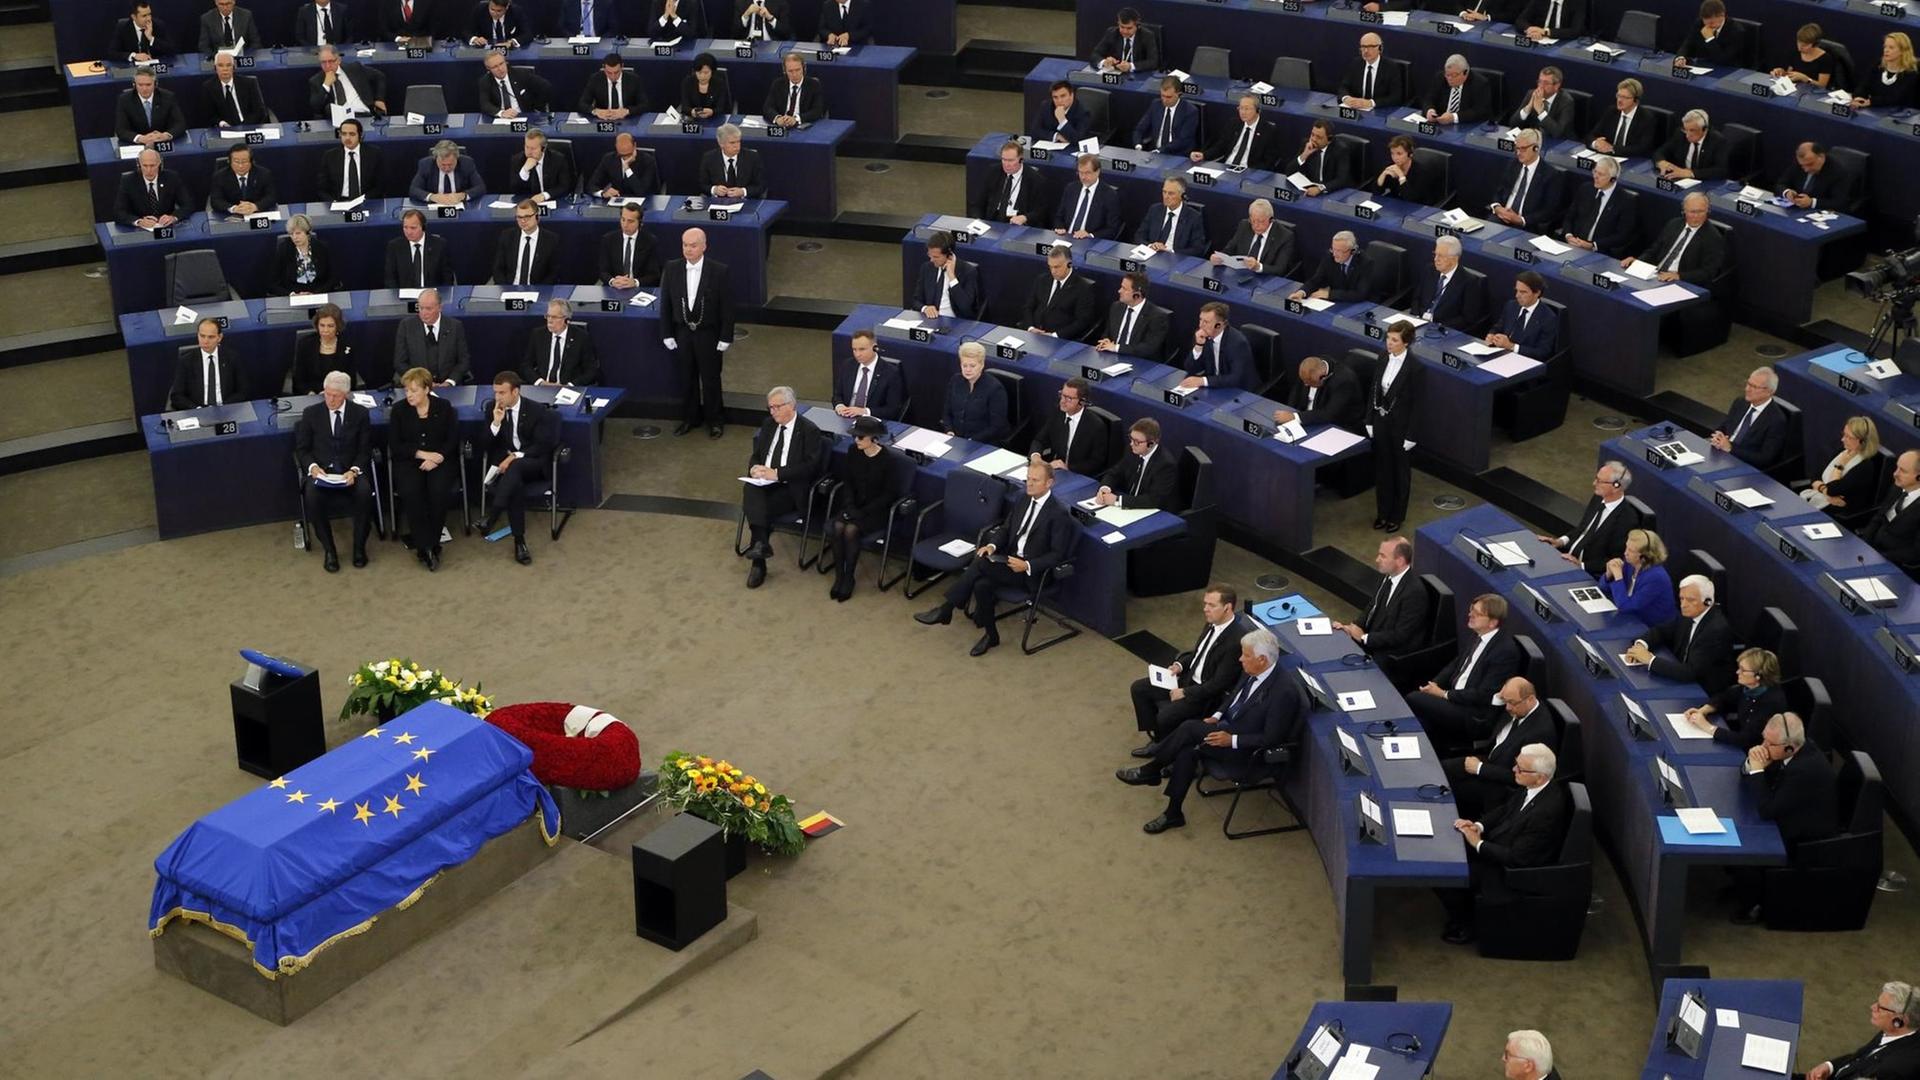 Der Sarg von Alt-Kanzler Kohl ist zum Staatsakt im Europäischen Parlament aufgebahrt.